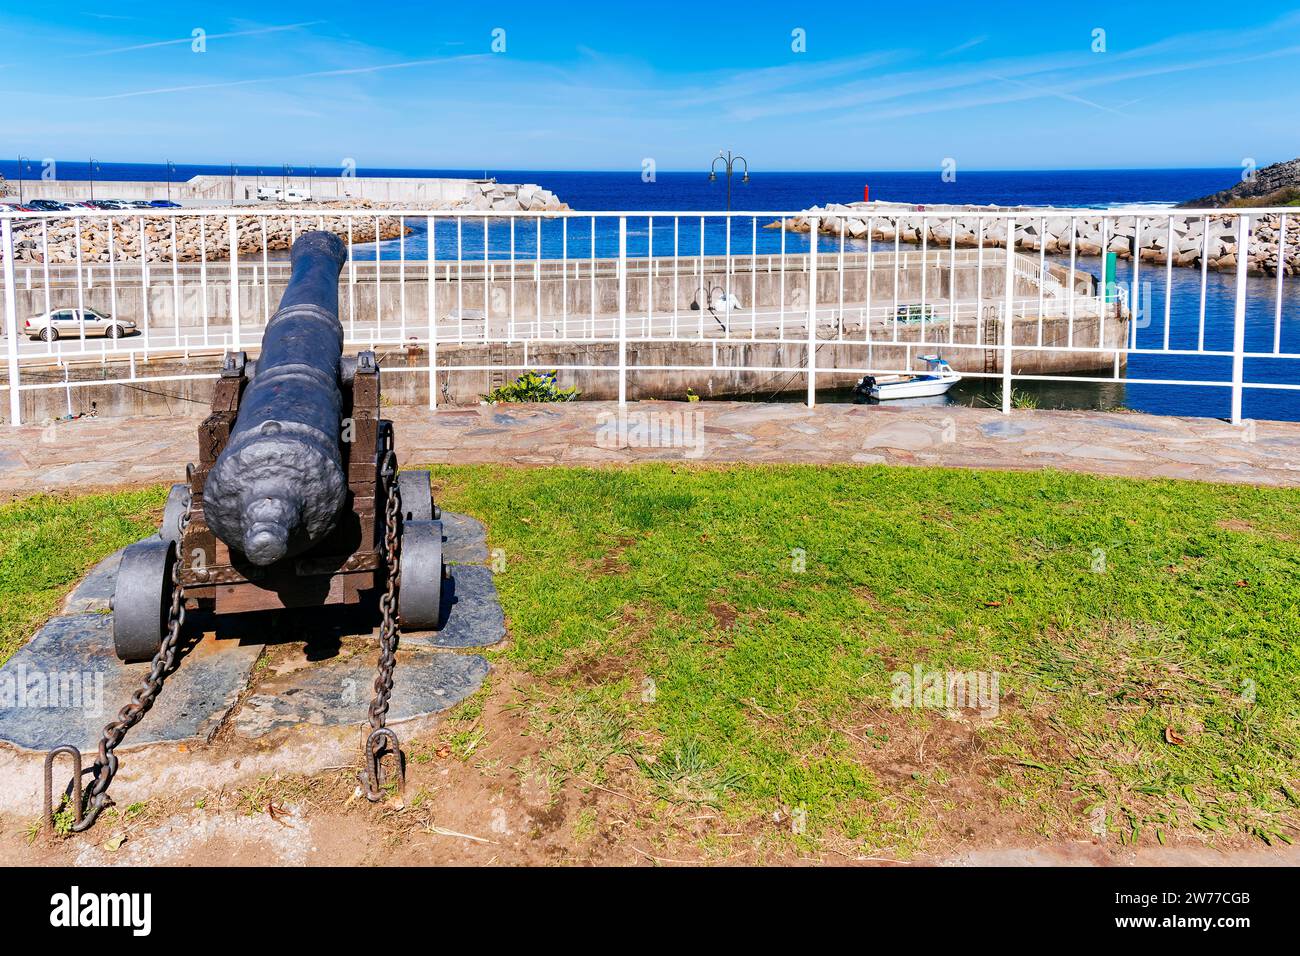 canon du 18e siècle. Puerto de Vega, Navia, Principauté des Asturies, Espagne, Europe Banque D'Images